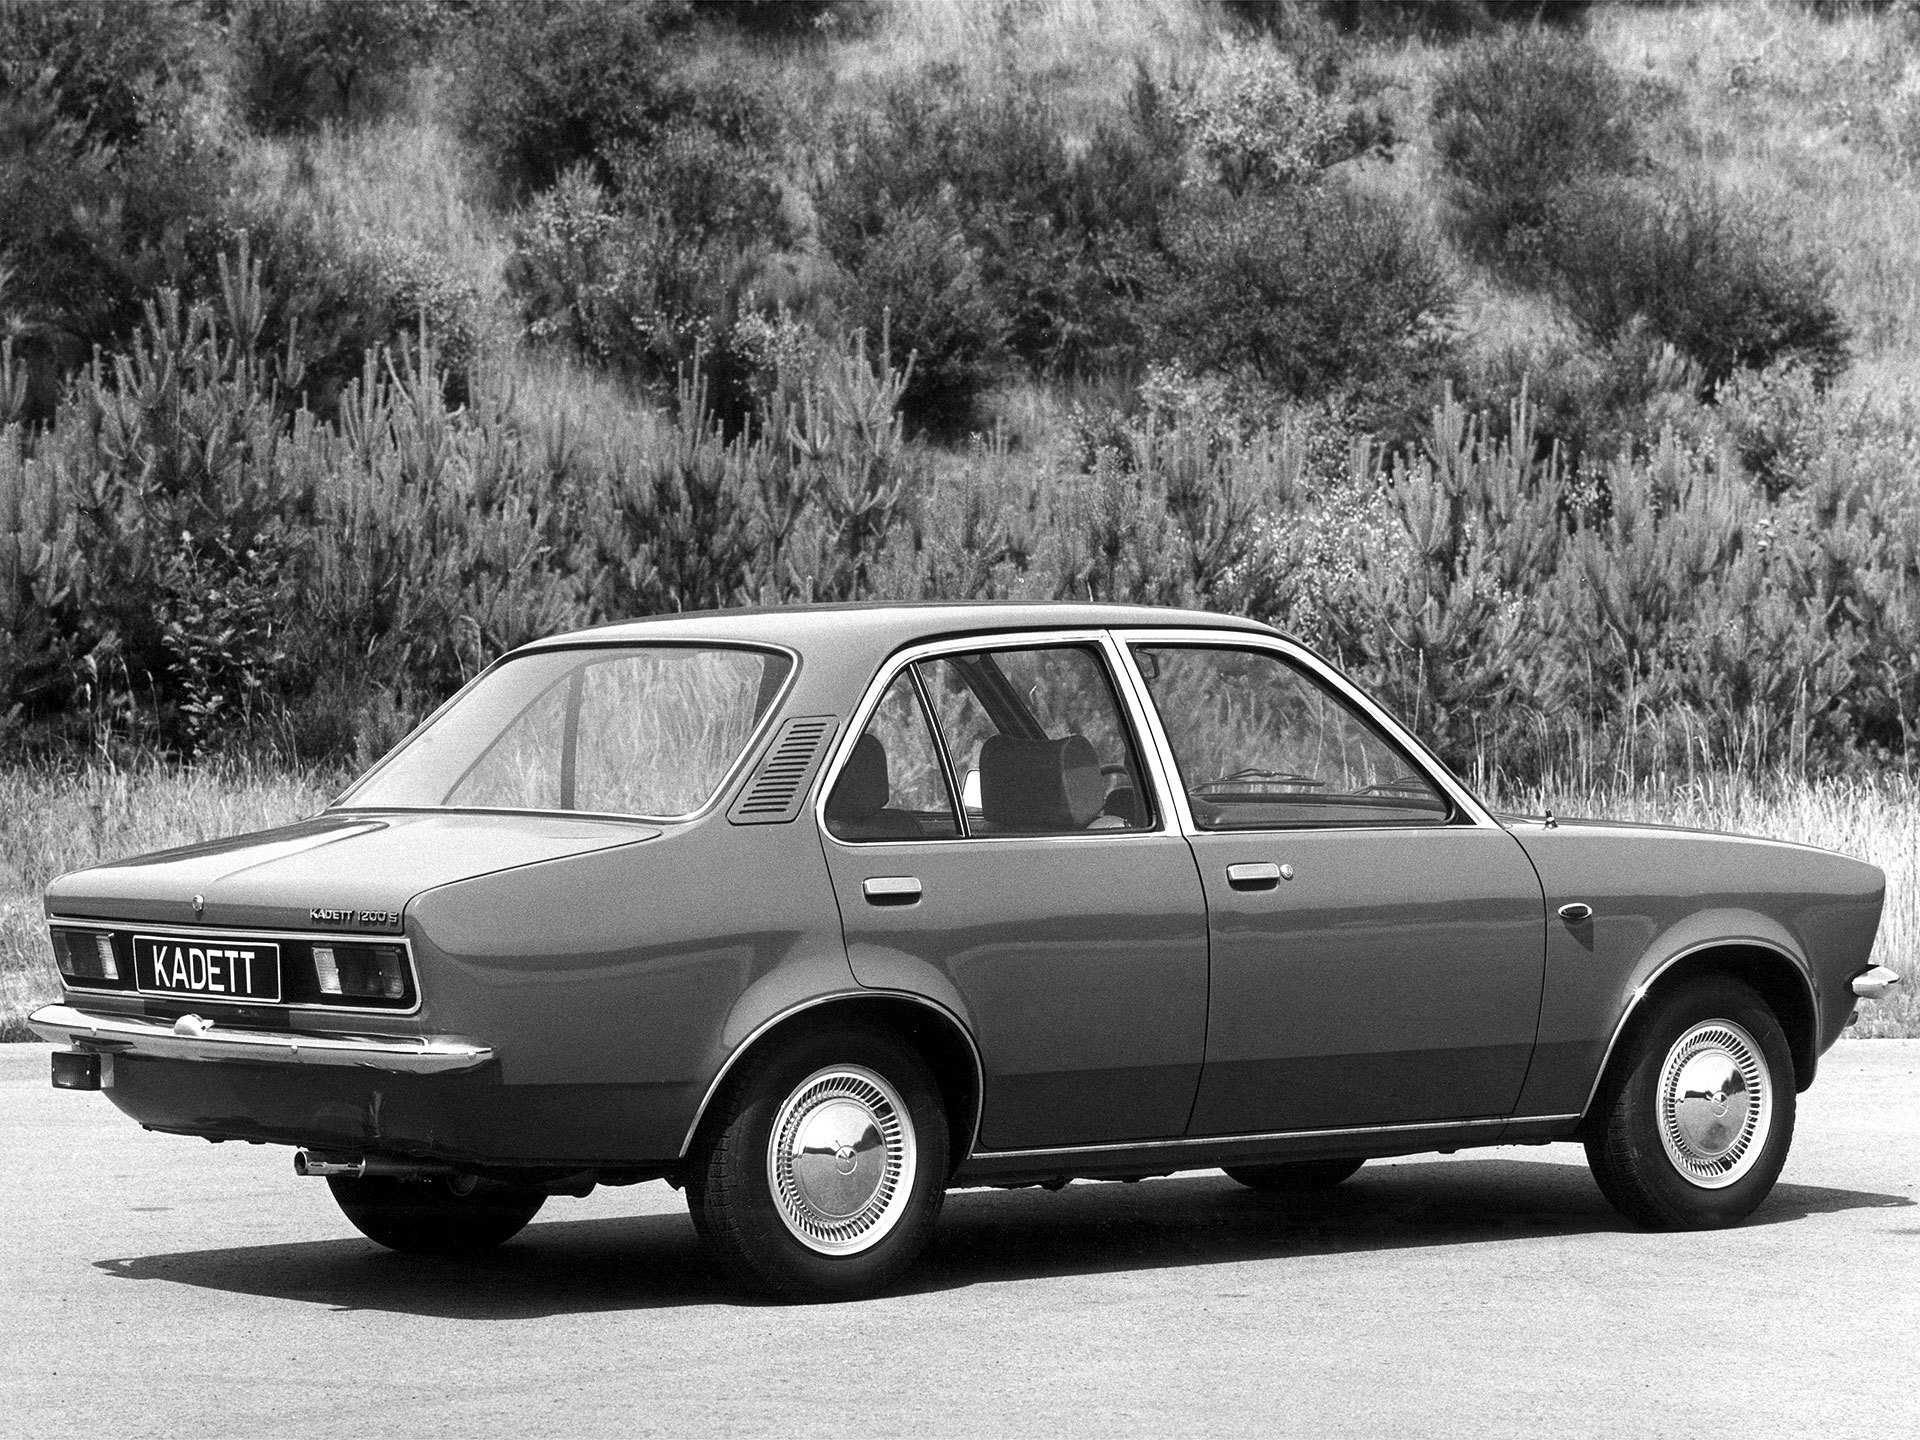 Opel Kadett K38 — автомобиль с большой историей, который выпускался в 6 поколениях Разработали его еще до начала войны — уже тогда были применены передовые решения, несмотря на бюджетный класс